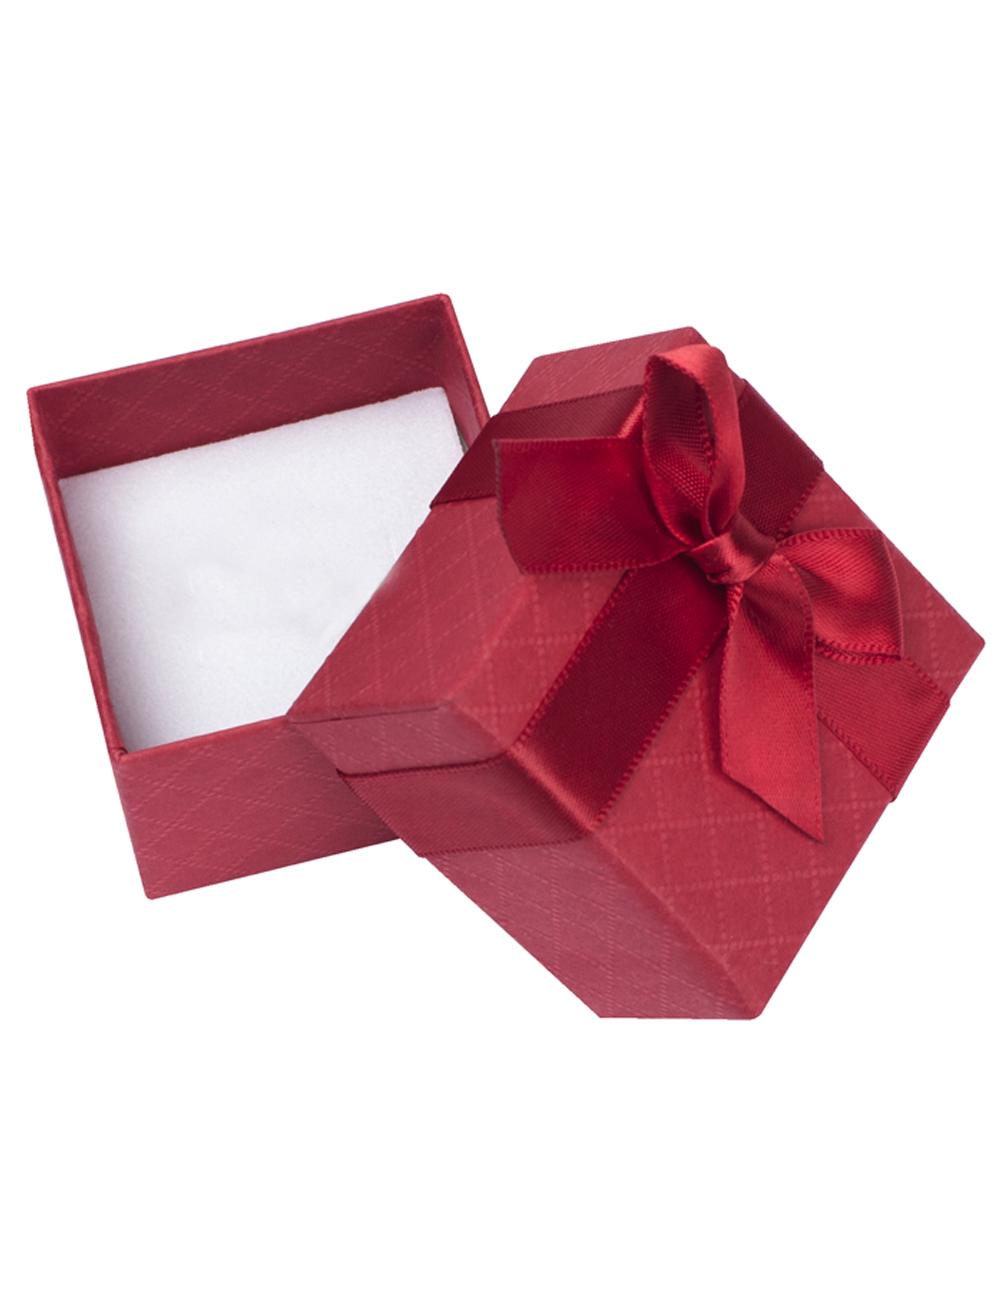 Rote Geschenkschachtel für Ringe mit Echtheitszertifikat | Verpackung